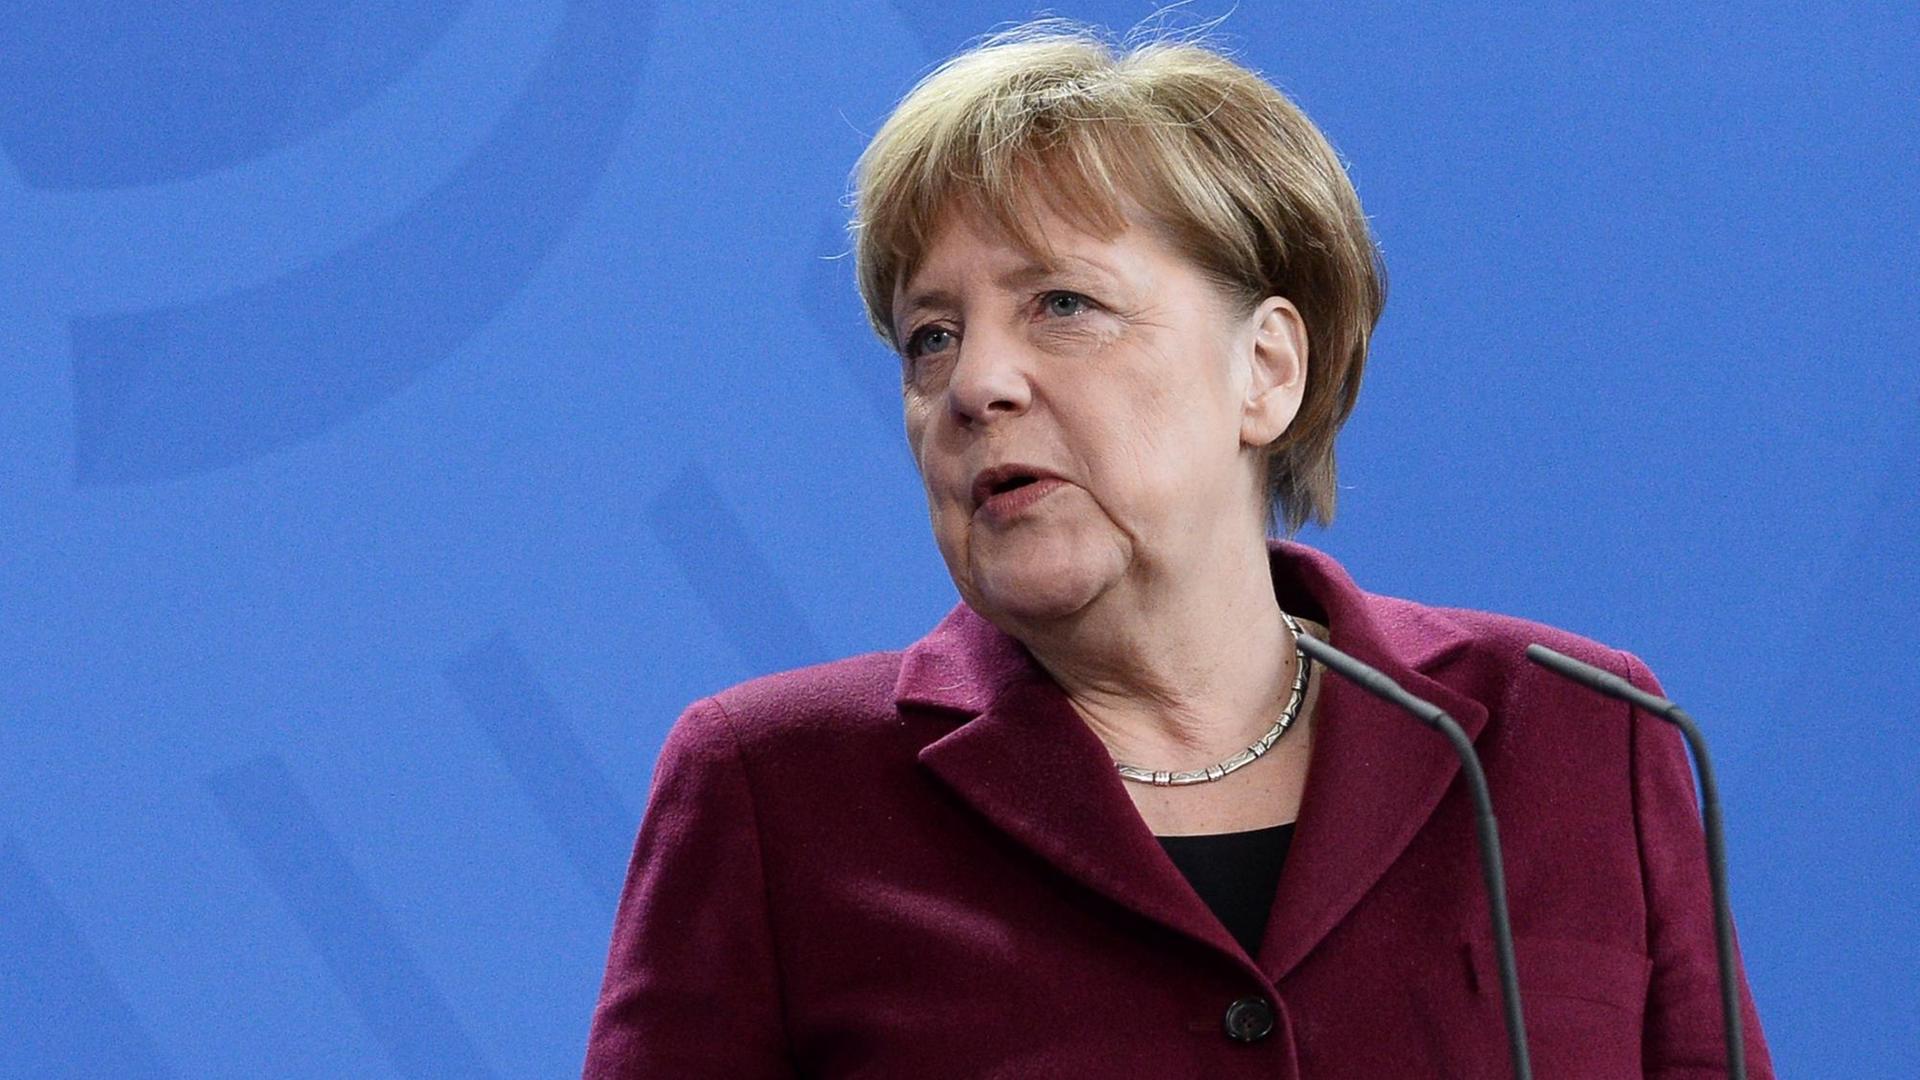 Bundeskanzlerin Angela Merkel in bordeauxrotem Blazer vor blauer Wand mit Bundesadler.